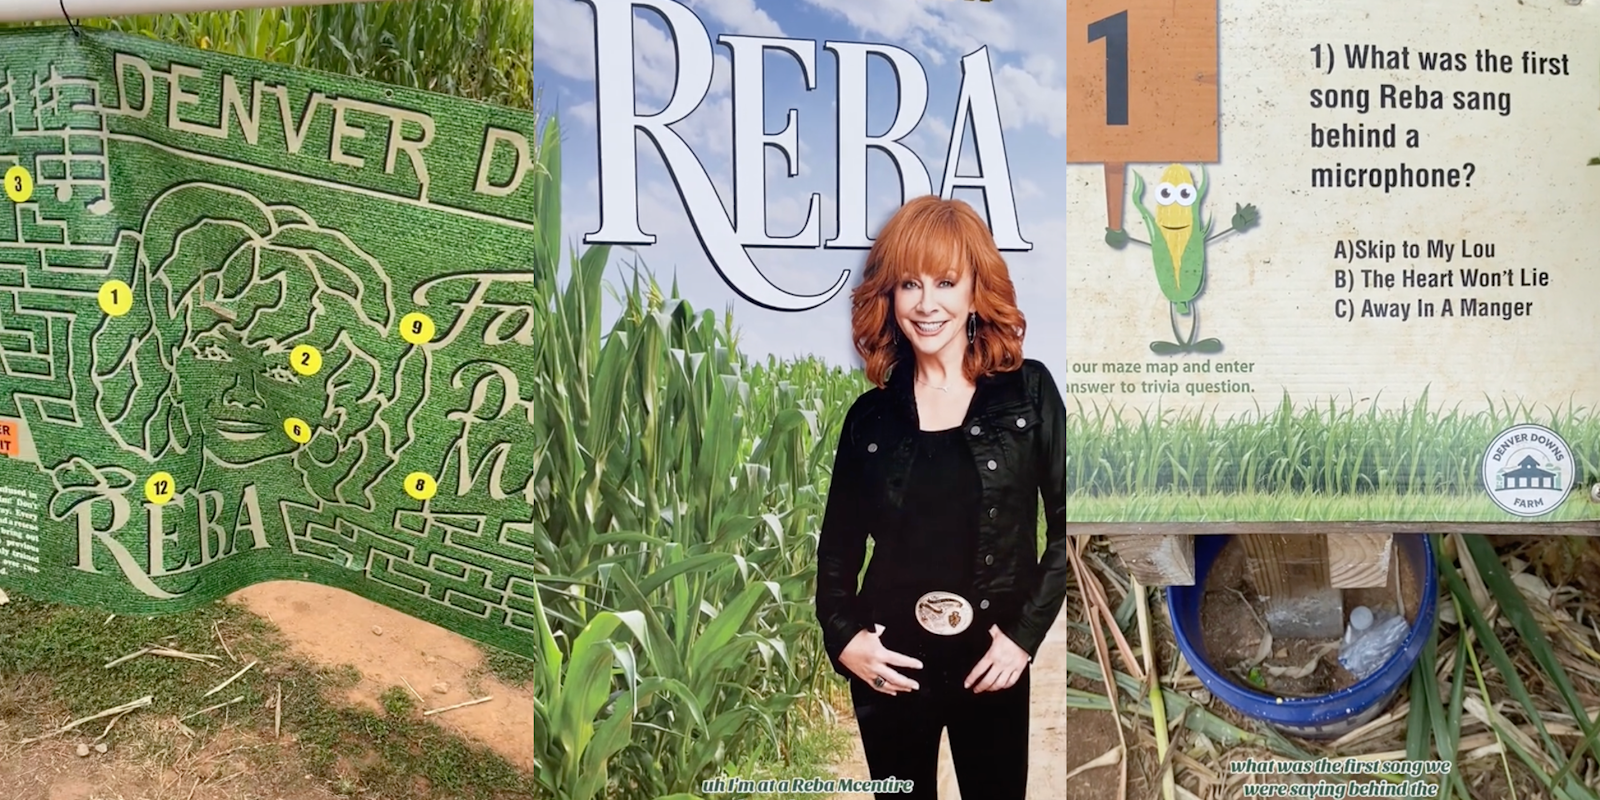 Reba McEntire-themed corn maze